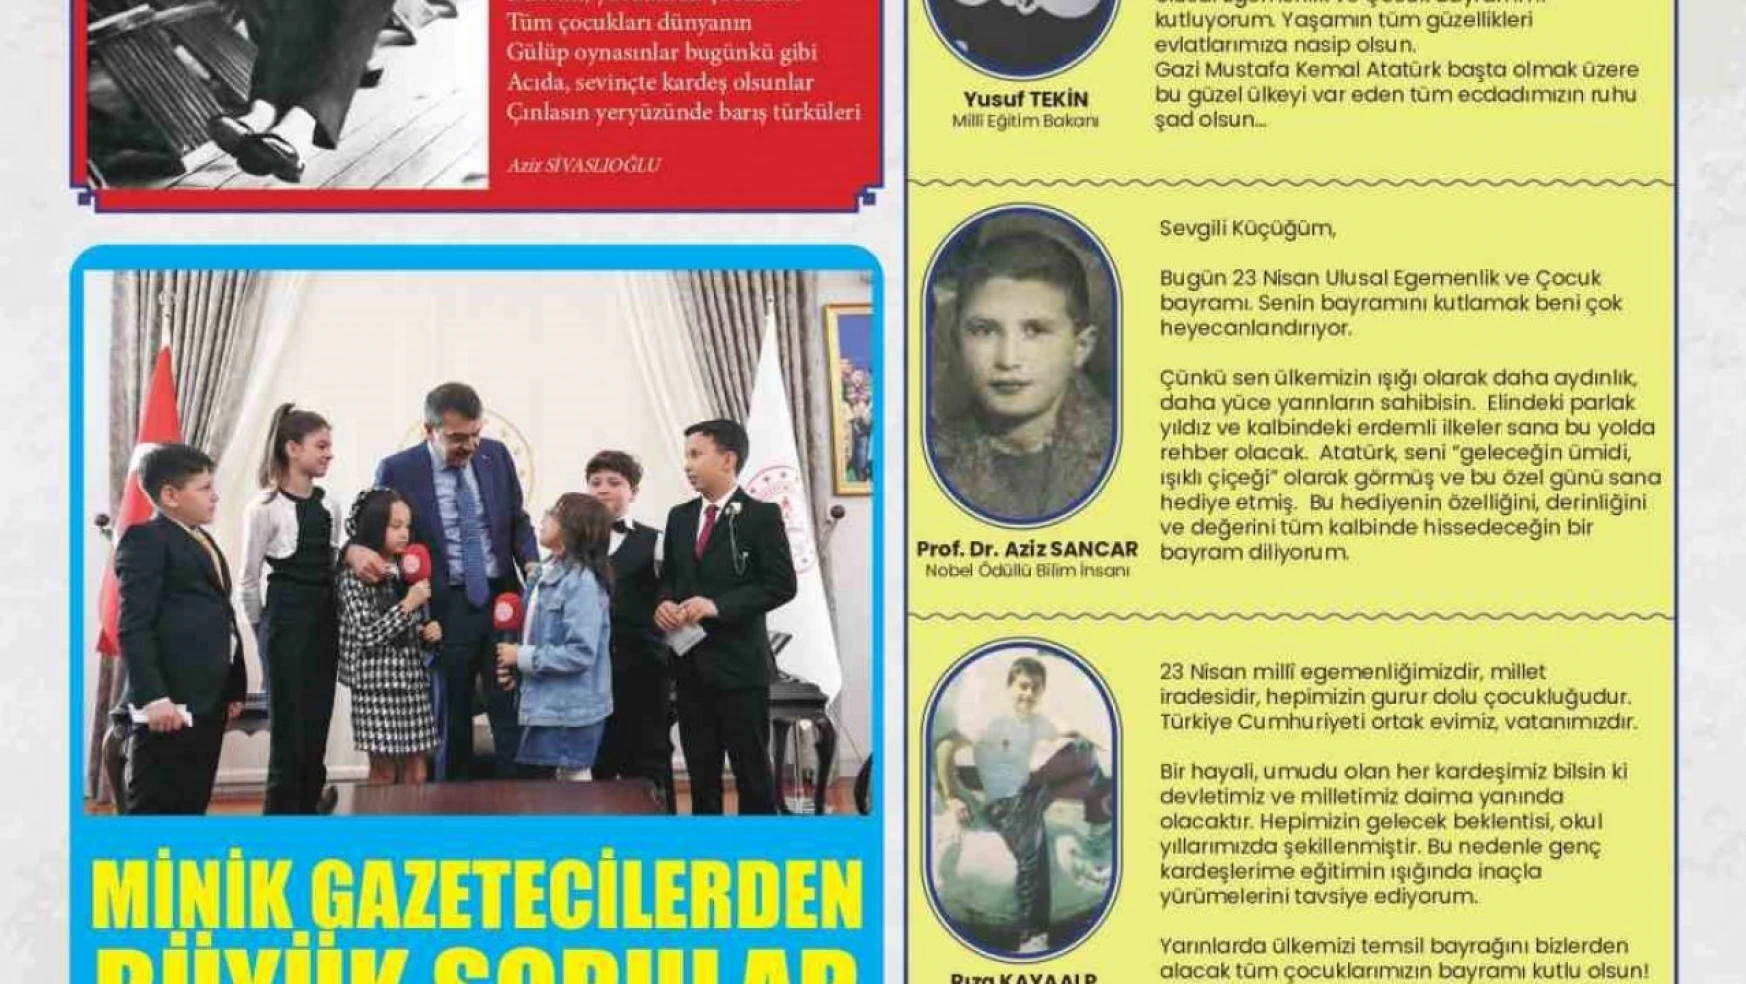 MEB tarafından çocuklar için 23 Nisan'a özel hazırlanan 'Gazete Çocuk'' yayımlandı